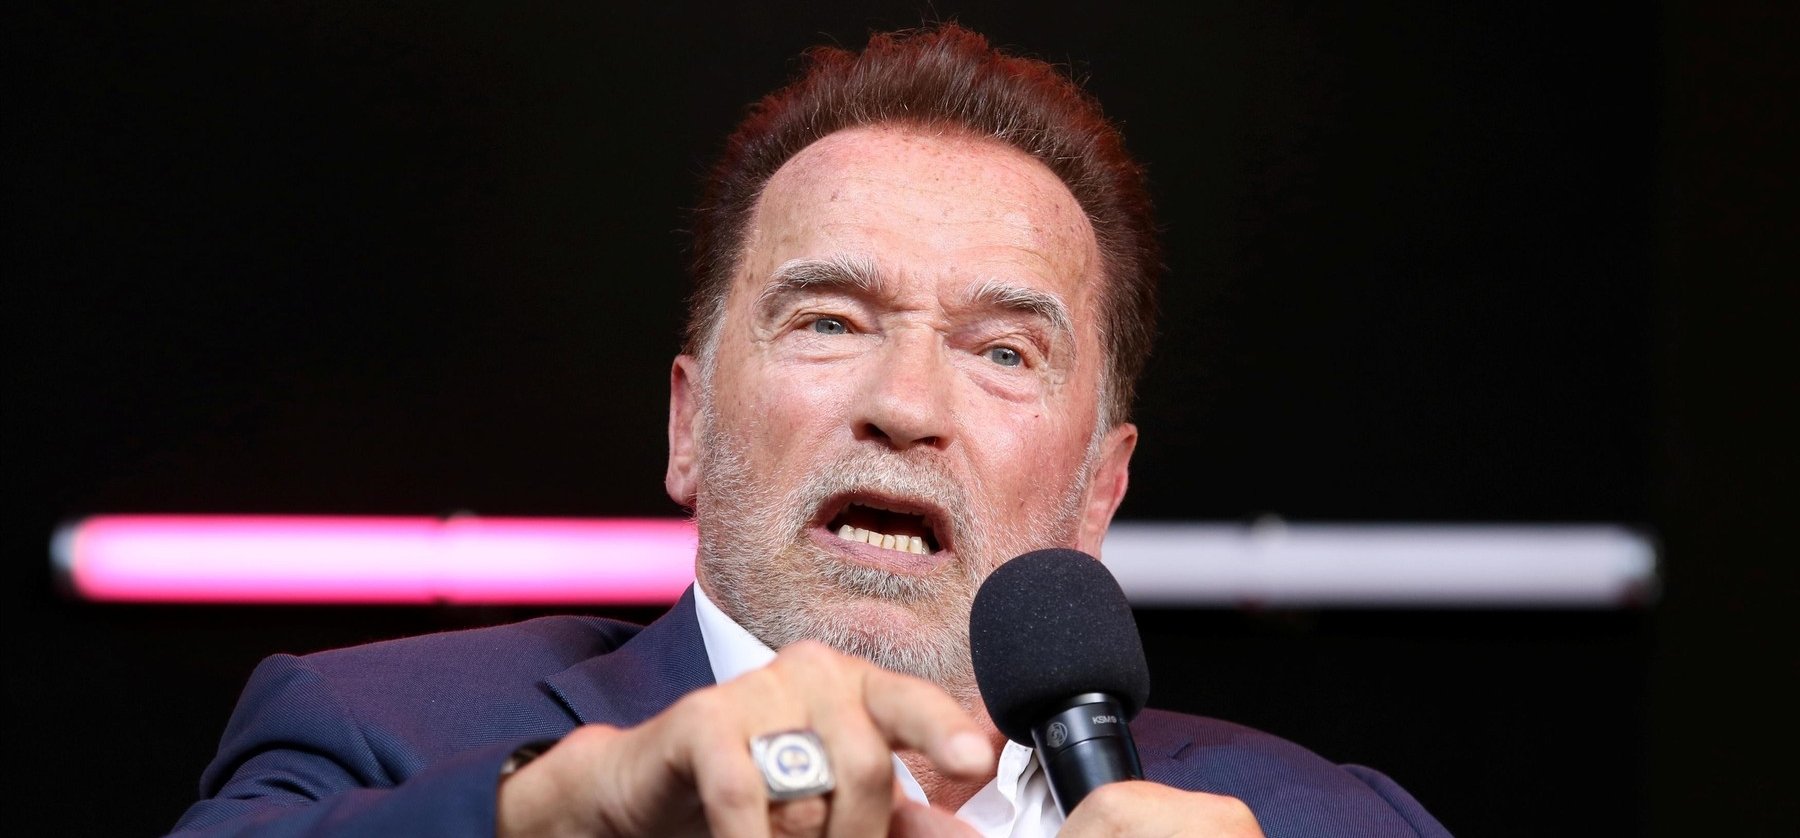 Arnold Schwarzenegger elmondta az igazságot a háborúról, aztán üzent az oroszoknak